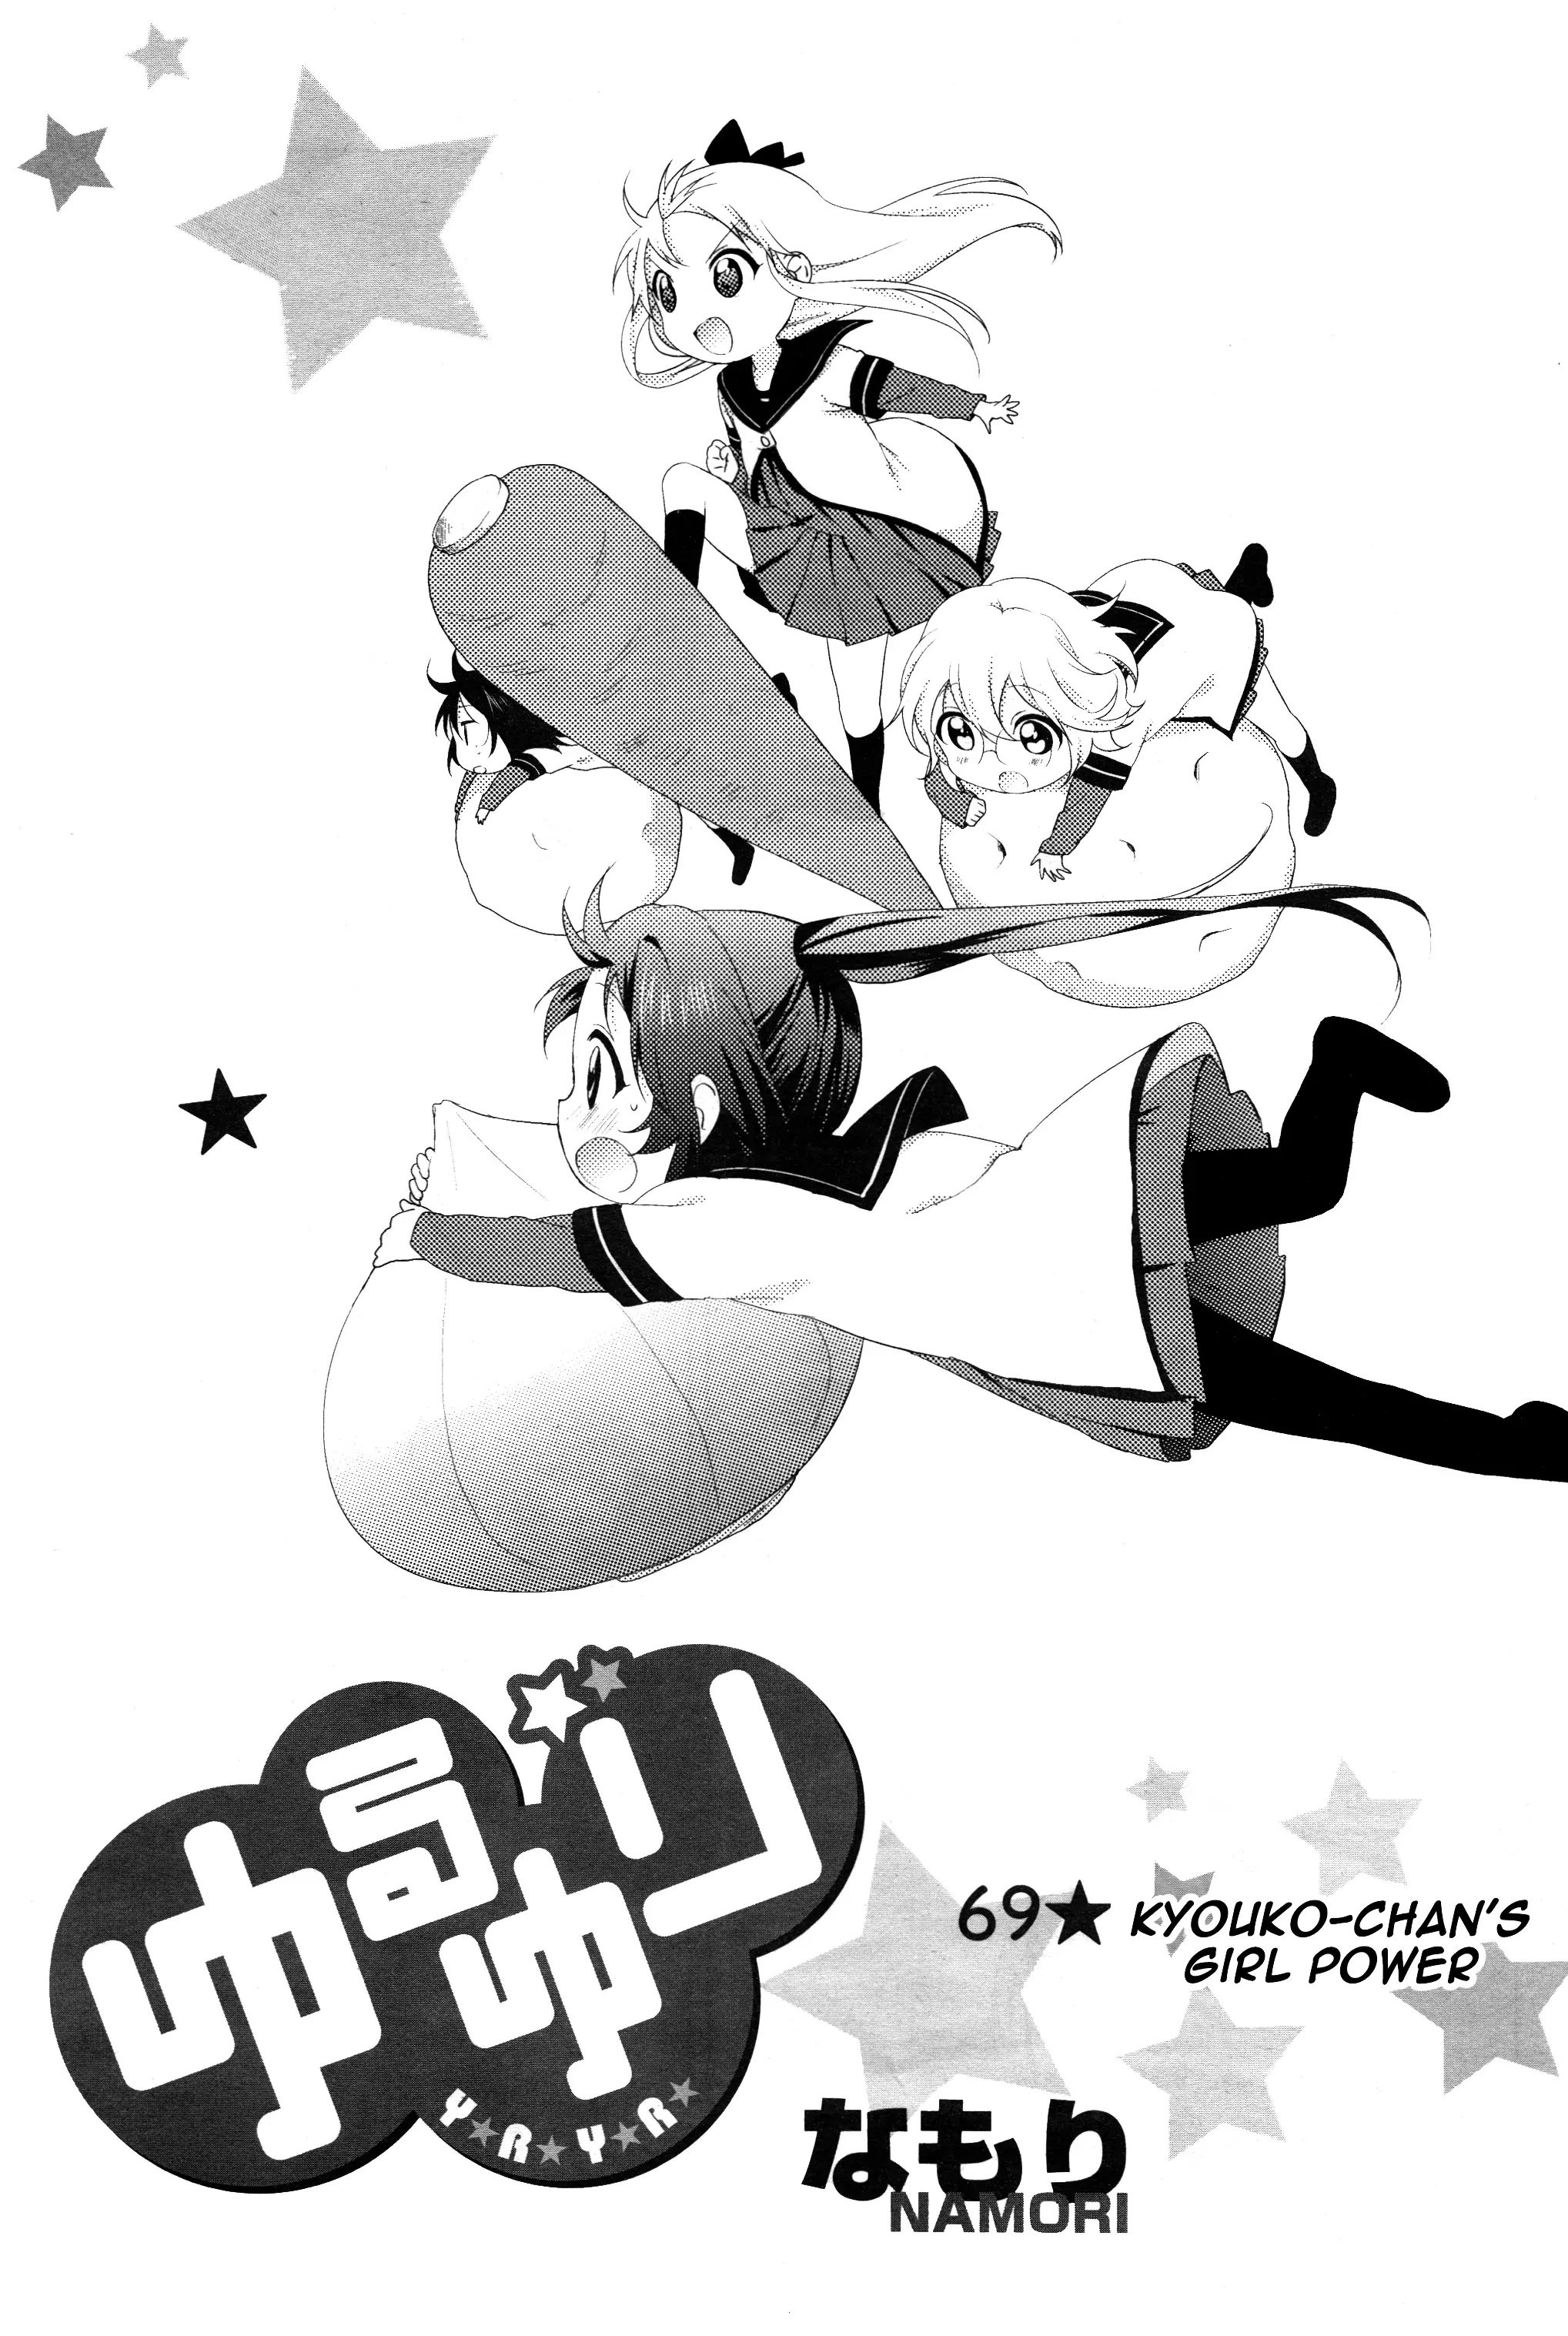 Yuru Yuri Vol.10 Chapter 69: Kyouko-Chan's Girl Power - Picture 1